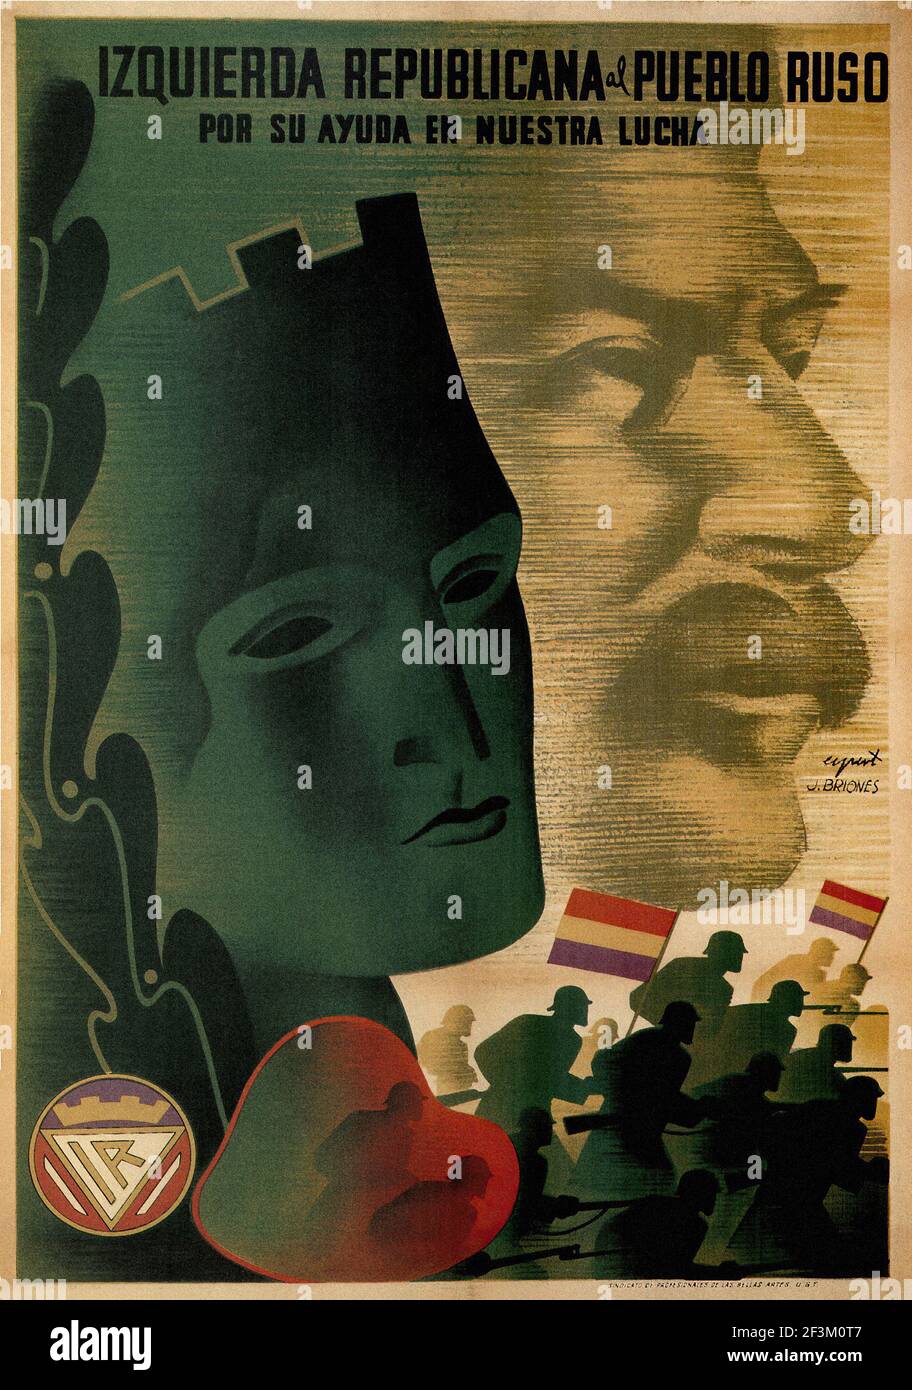 Affiche de propagande espagnole de la guerre de Sécession. La gauche républicaine au peuple russe. (Merci) pour votre aide dans notre lutte. 1937 Banque D'Images